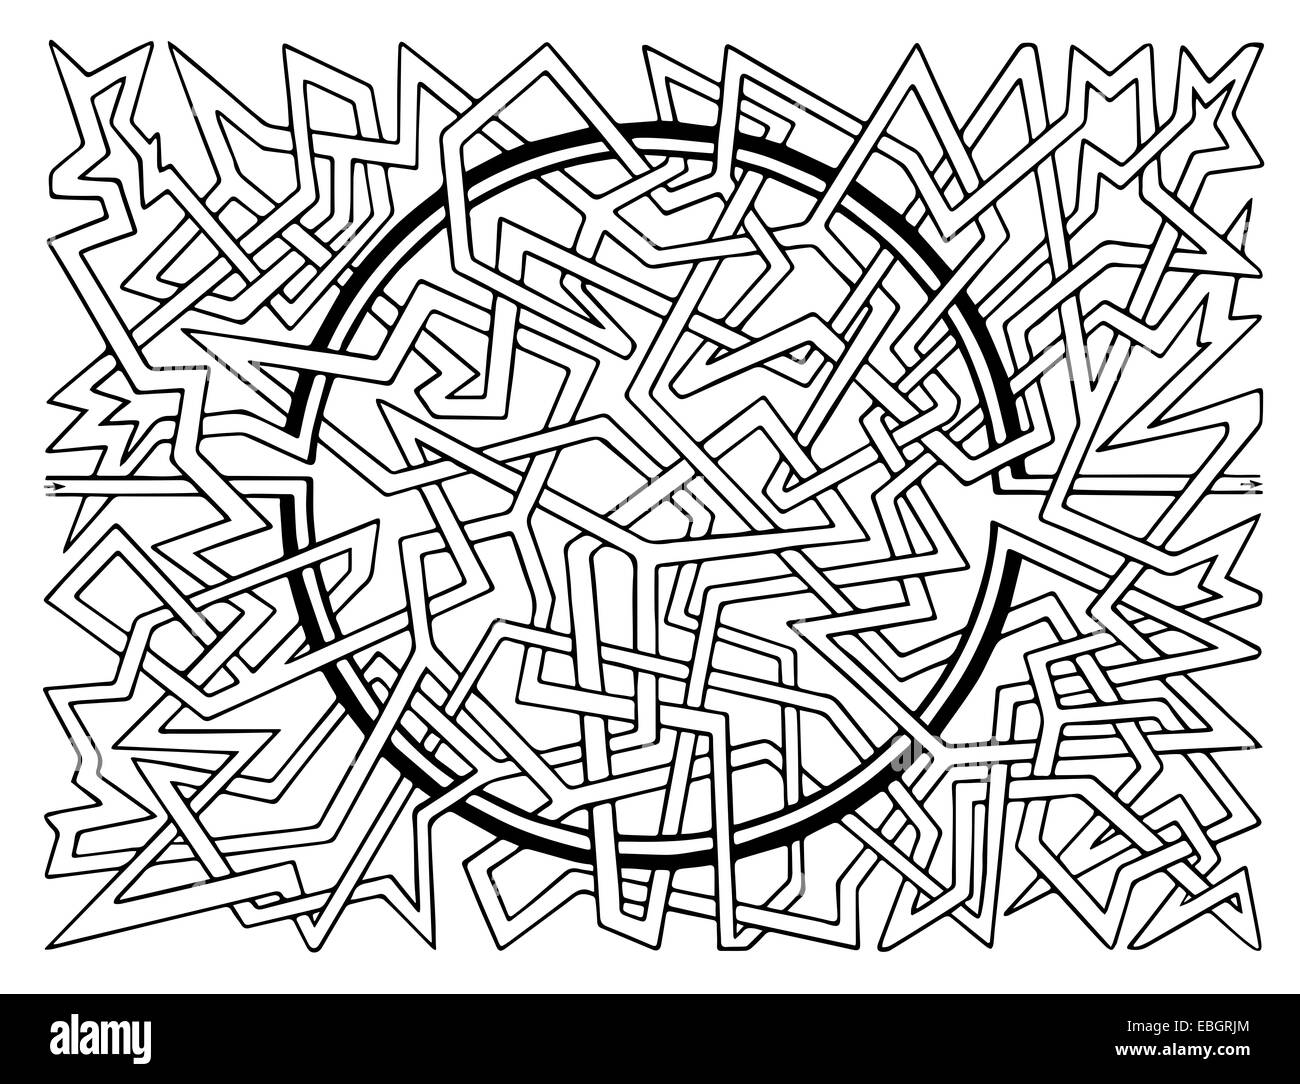 Brain-teaser vector labyrinth Stock Photo